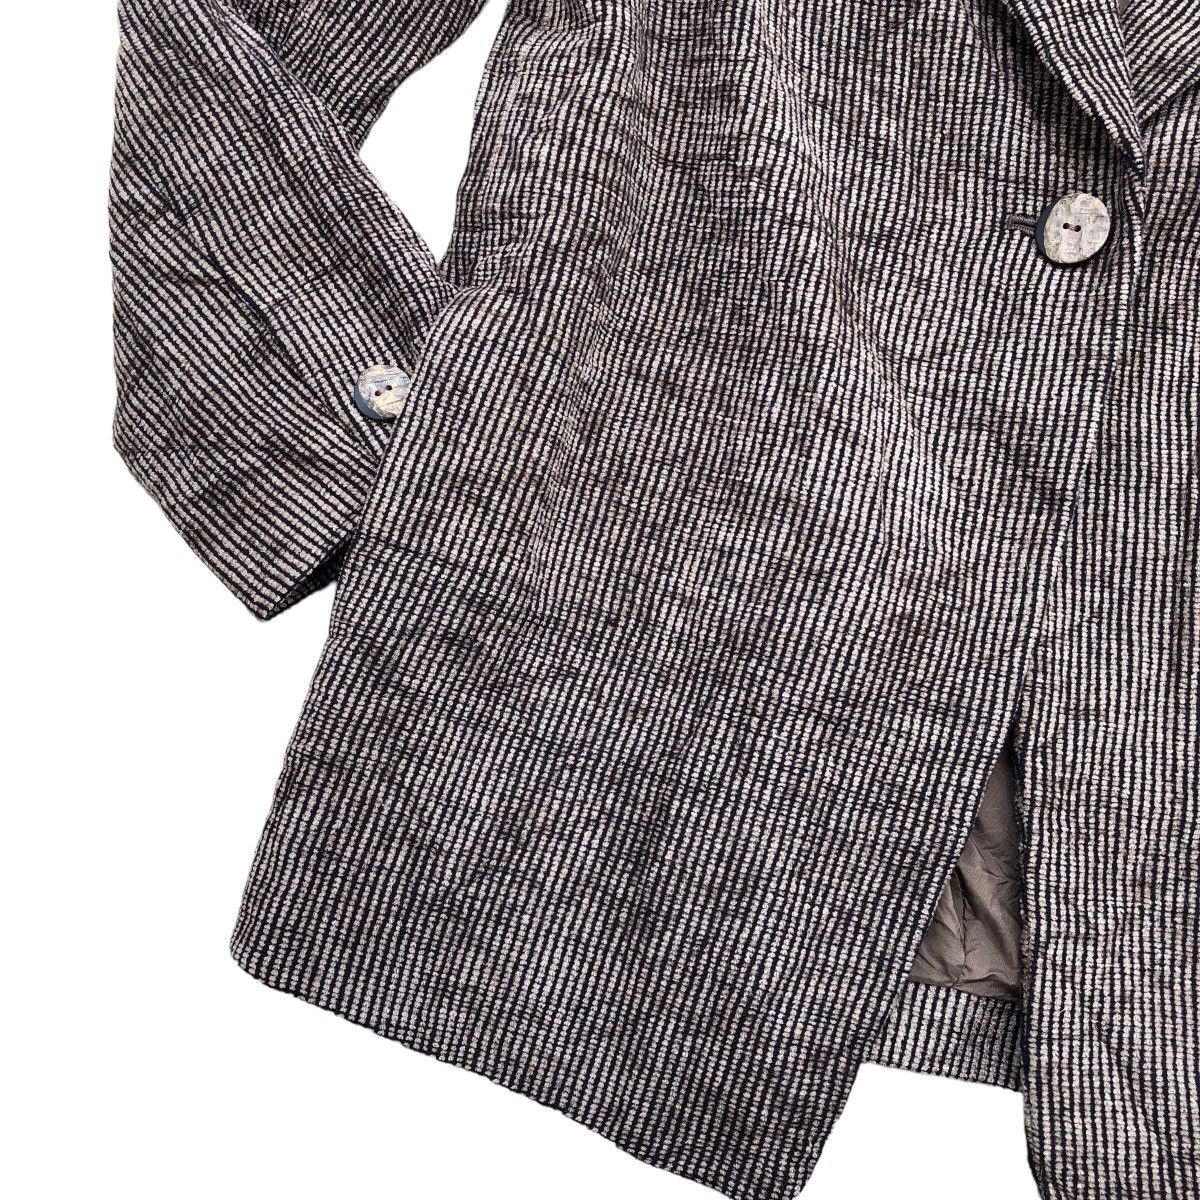 Archival Clothing PAUL LEMAIRE Corduroy Blazer Coat Size M / US 6-8 / IT 42-44 - 5 Thumbnail